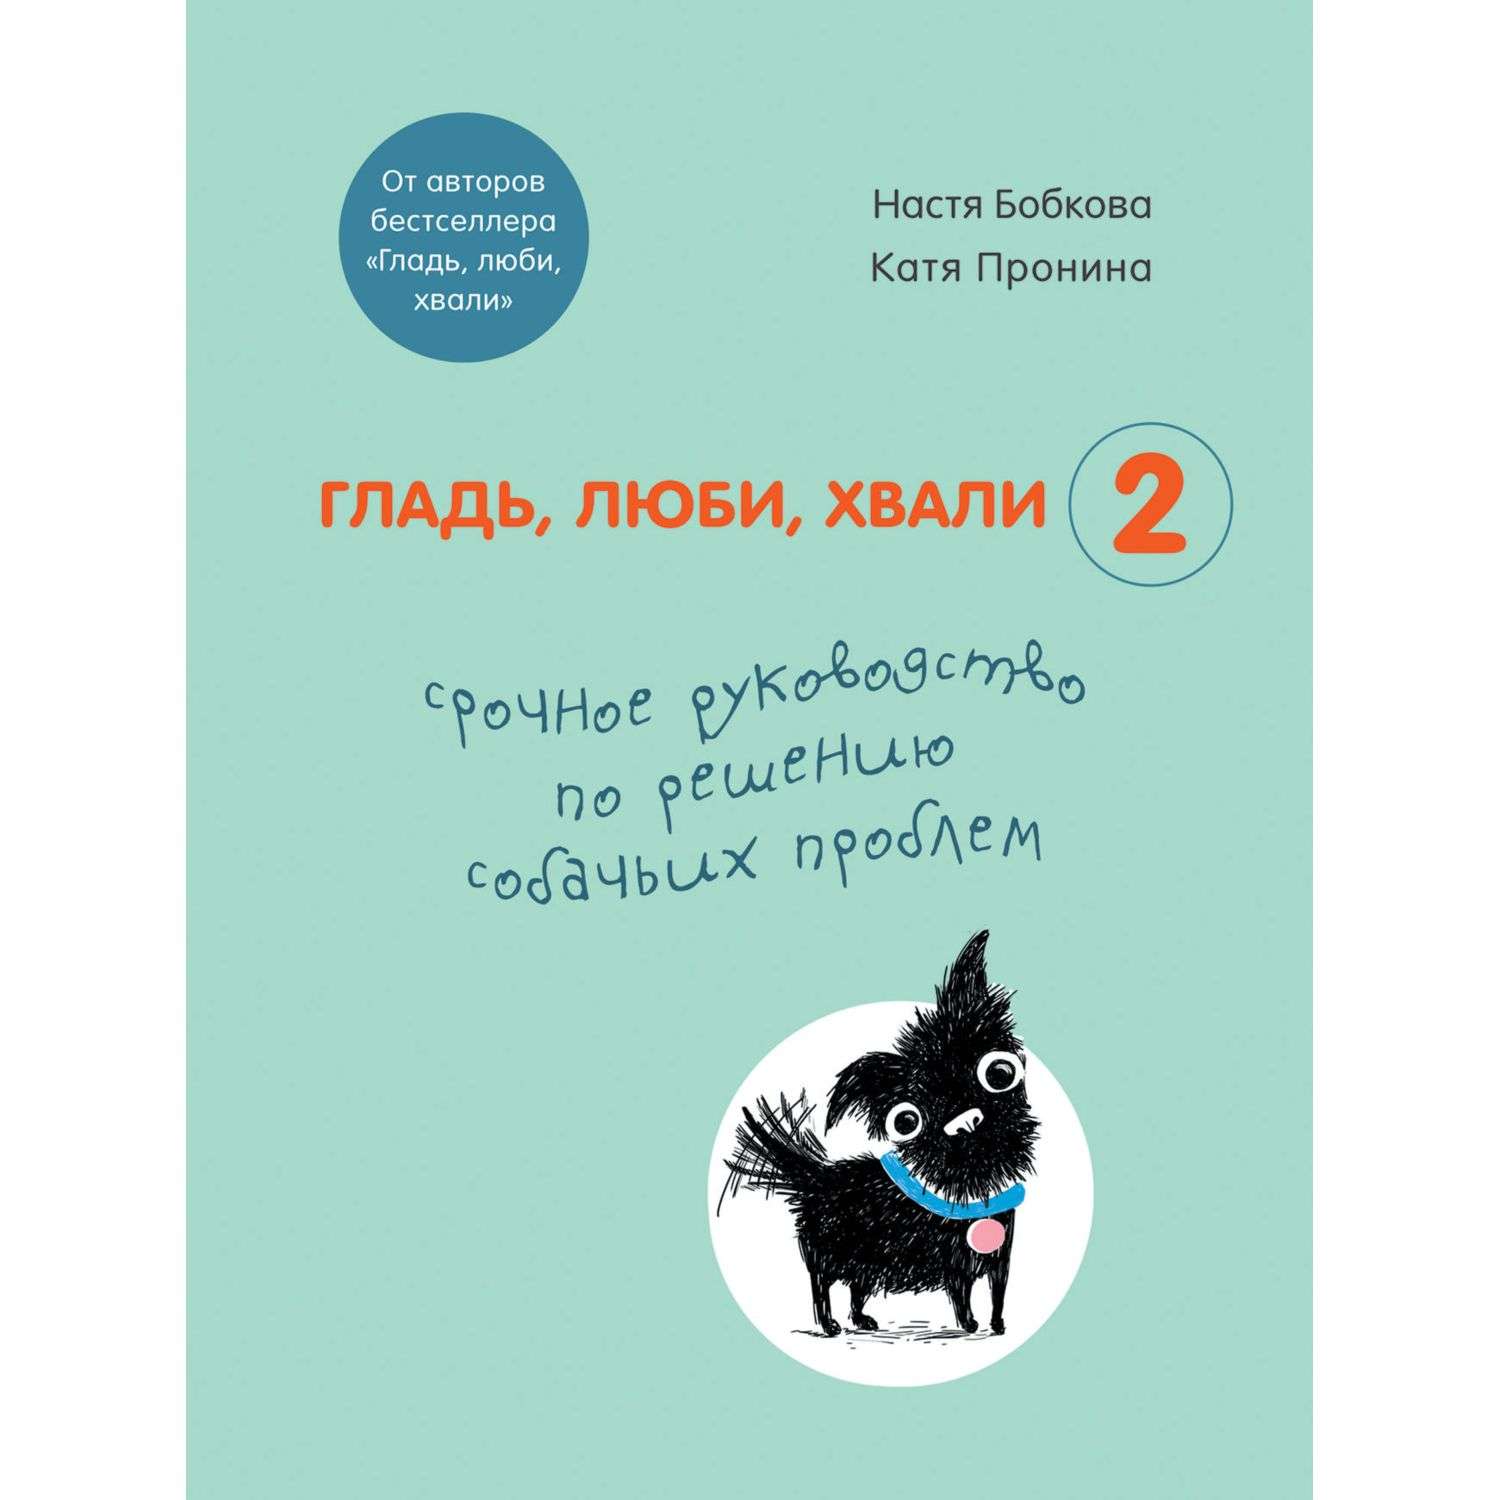 Книга БОМБОРА Гладь люби хвали 2 Срочное руководство по решению собачьих проблем - фото 5